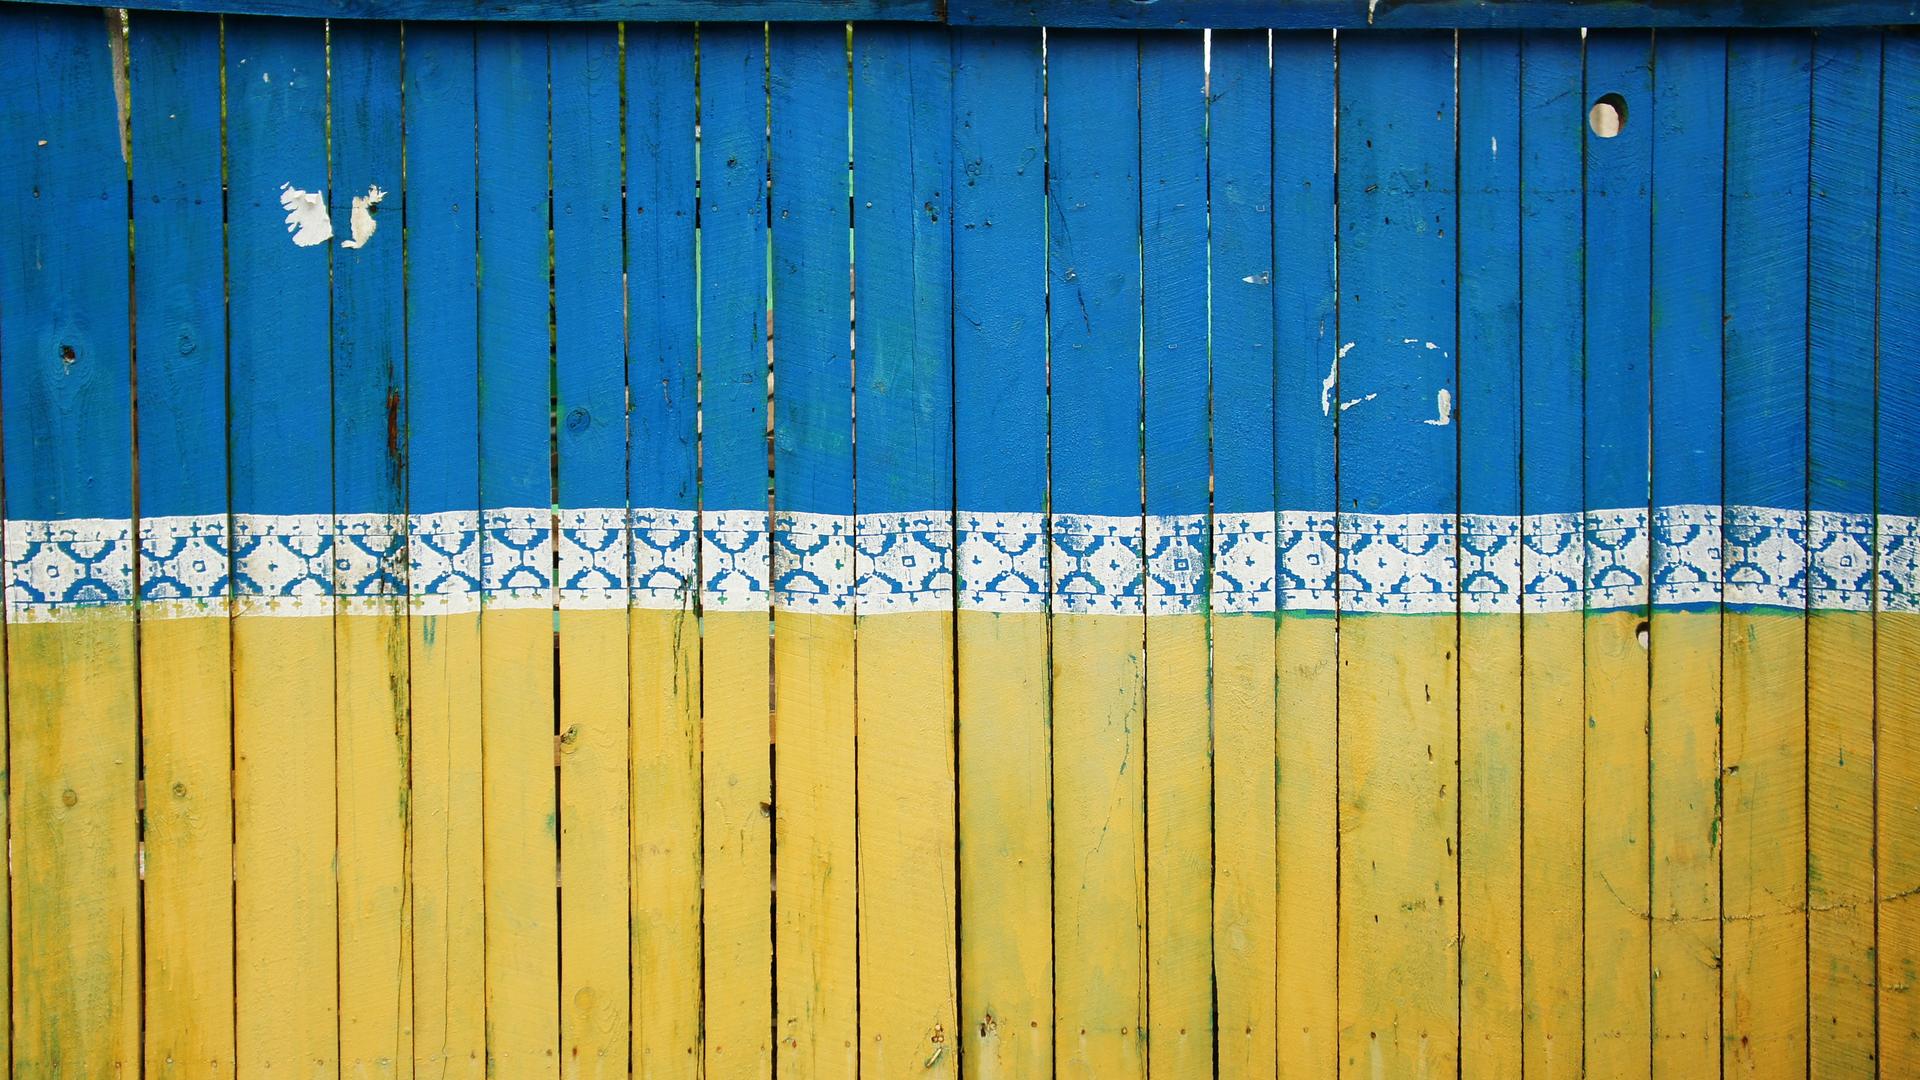 Zaunlatten sind so in blau und gelb gestrichen, dass sie die Flagge der Ukraine abbilden.